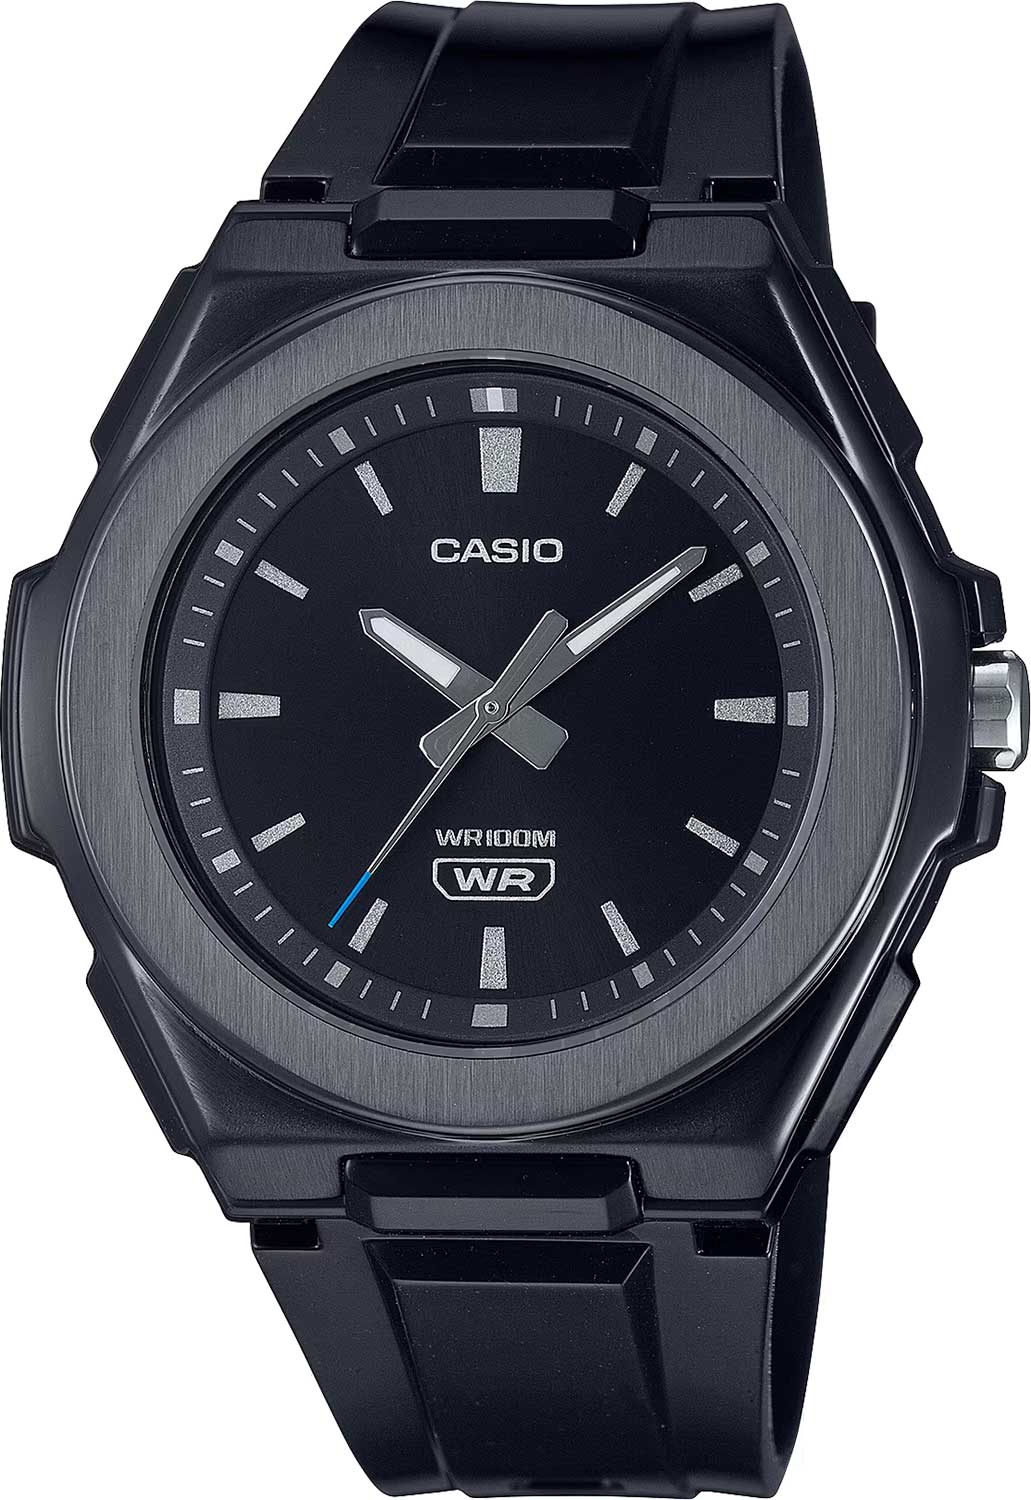    Casio Collection LWA-300HB-1E